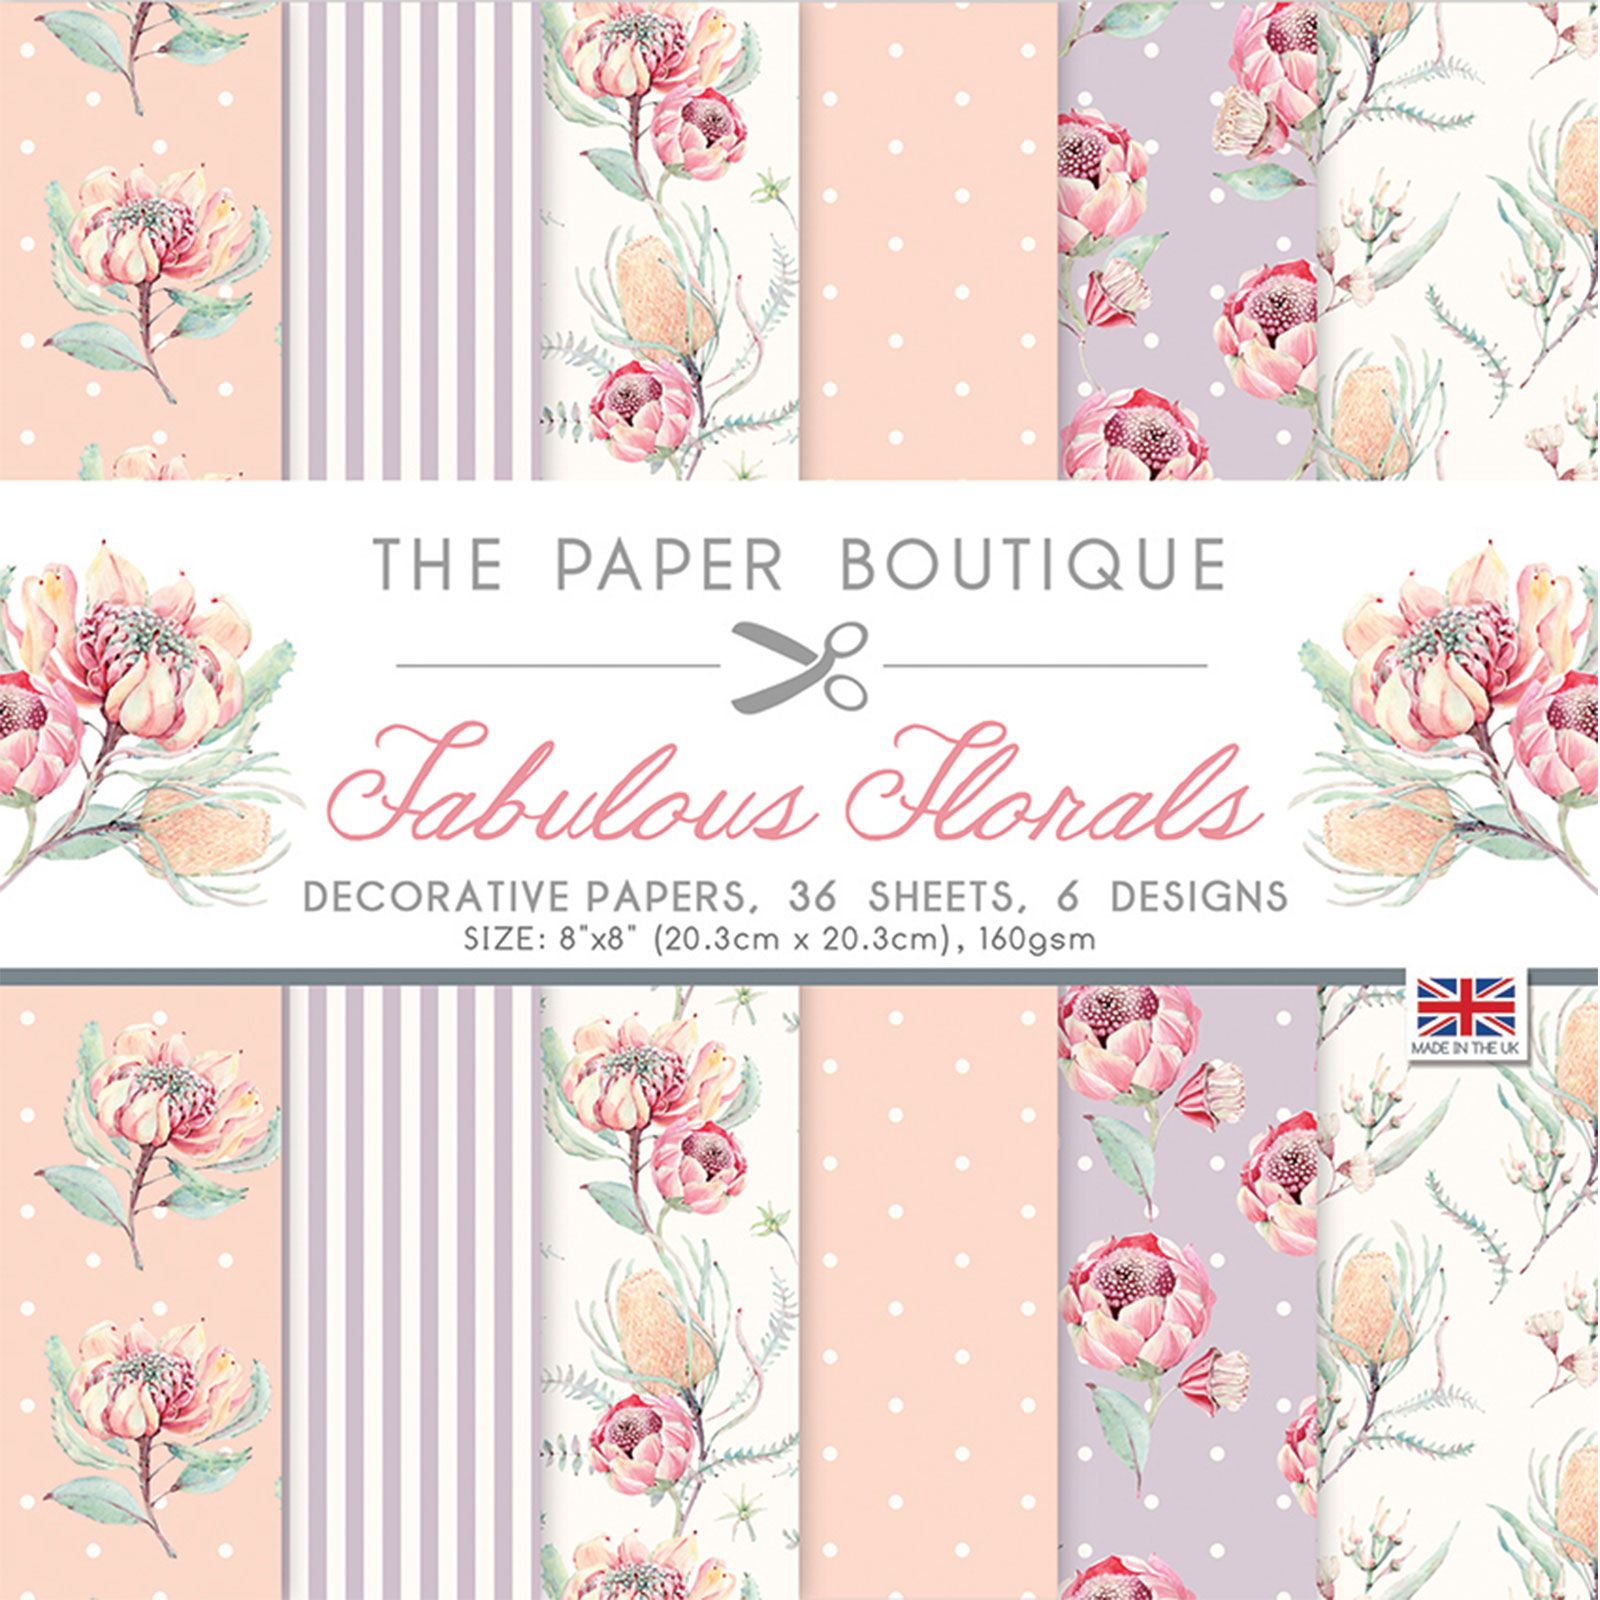 The Paper Boutique • Fabulous florals decorative papers 20,3x20,3cm